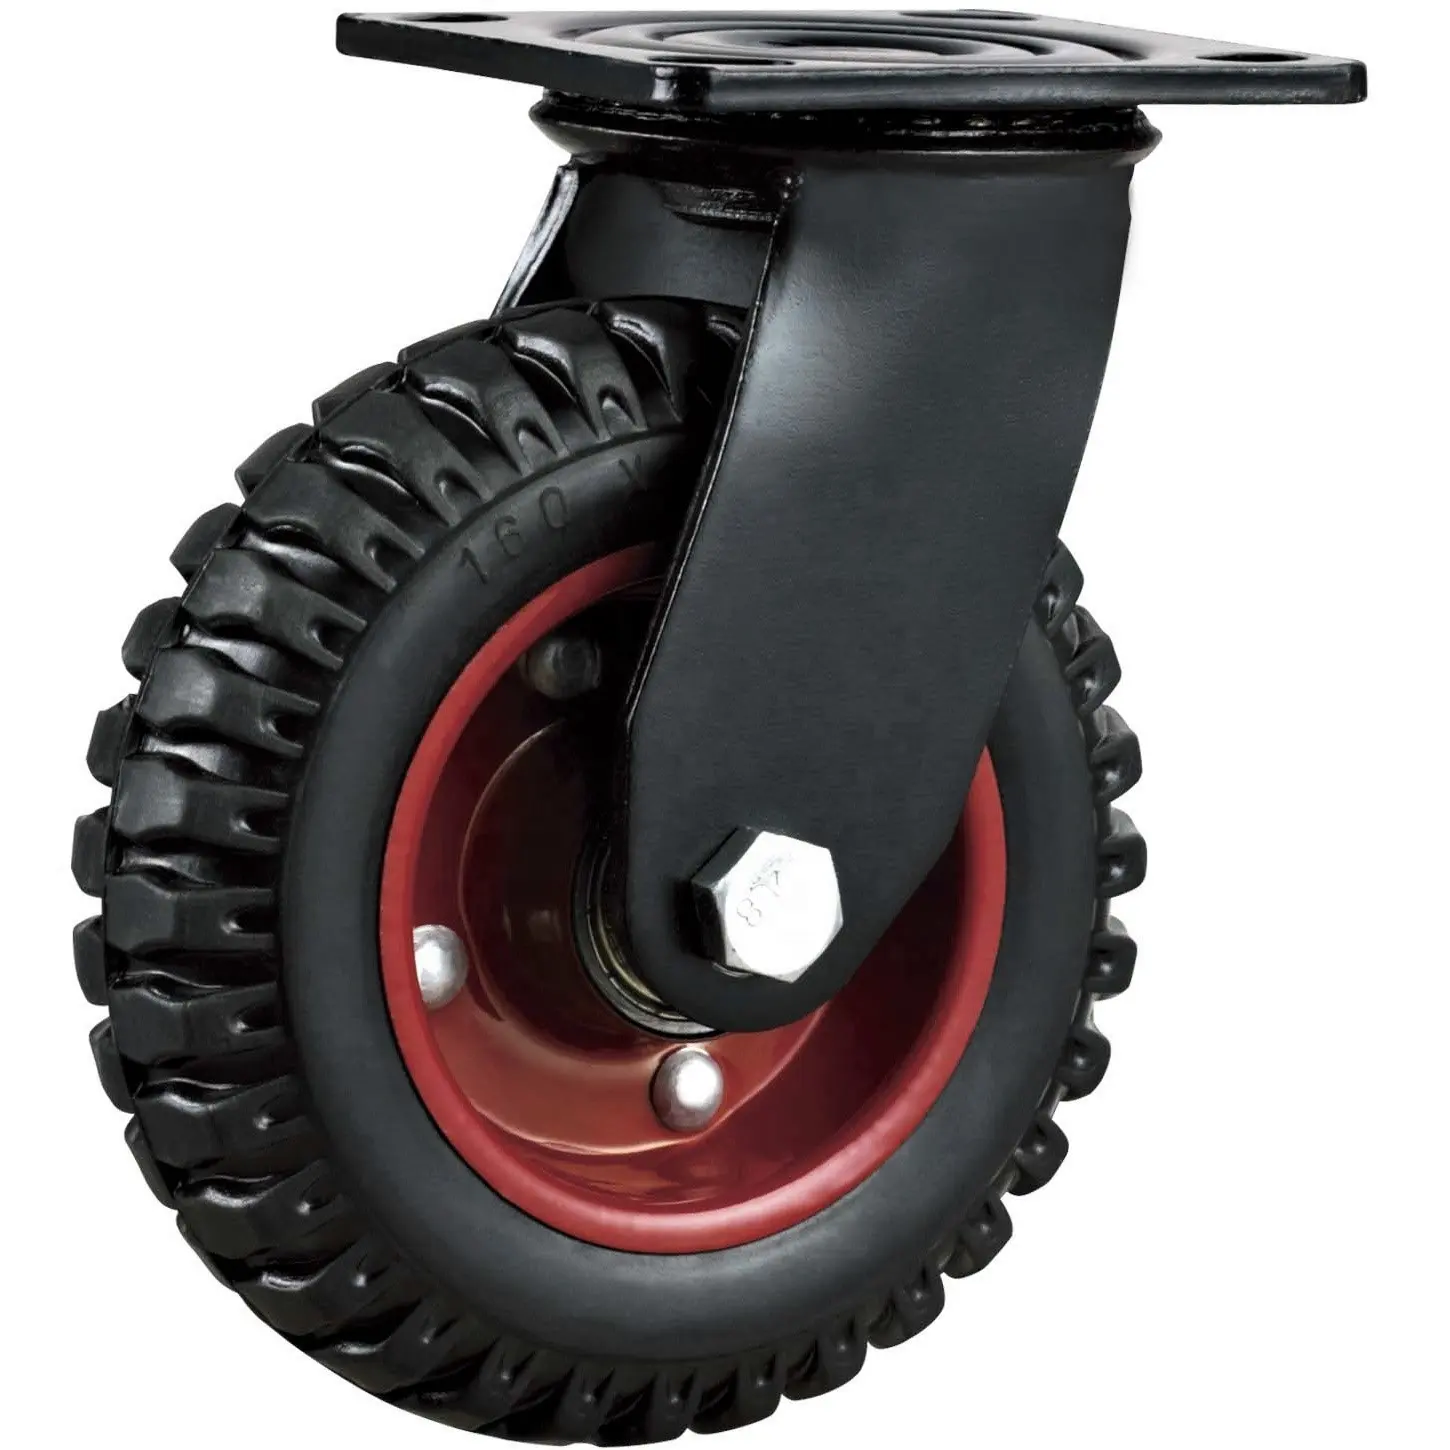 S-S kauçuk endüstriyel tekerlekler çöp bidonları ağır sıcak dokulu siyah görünüm için 8 inç